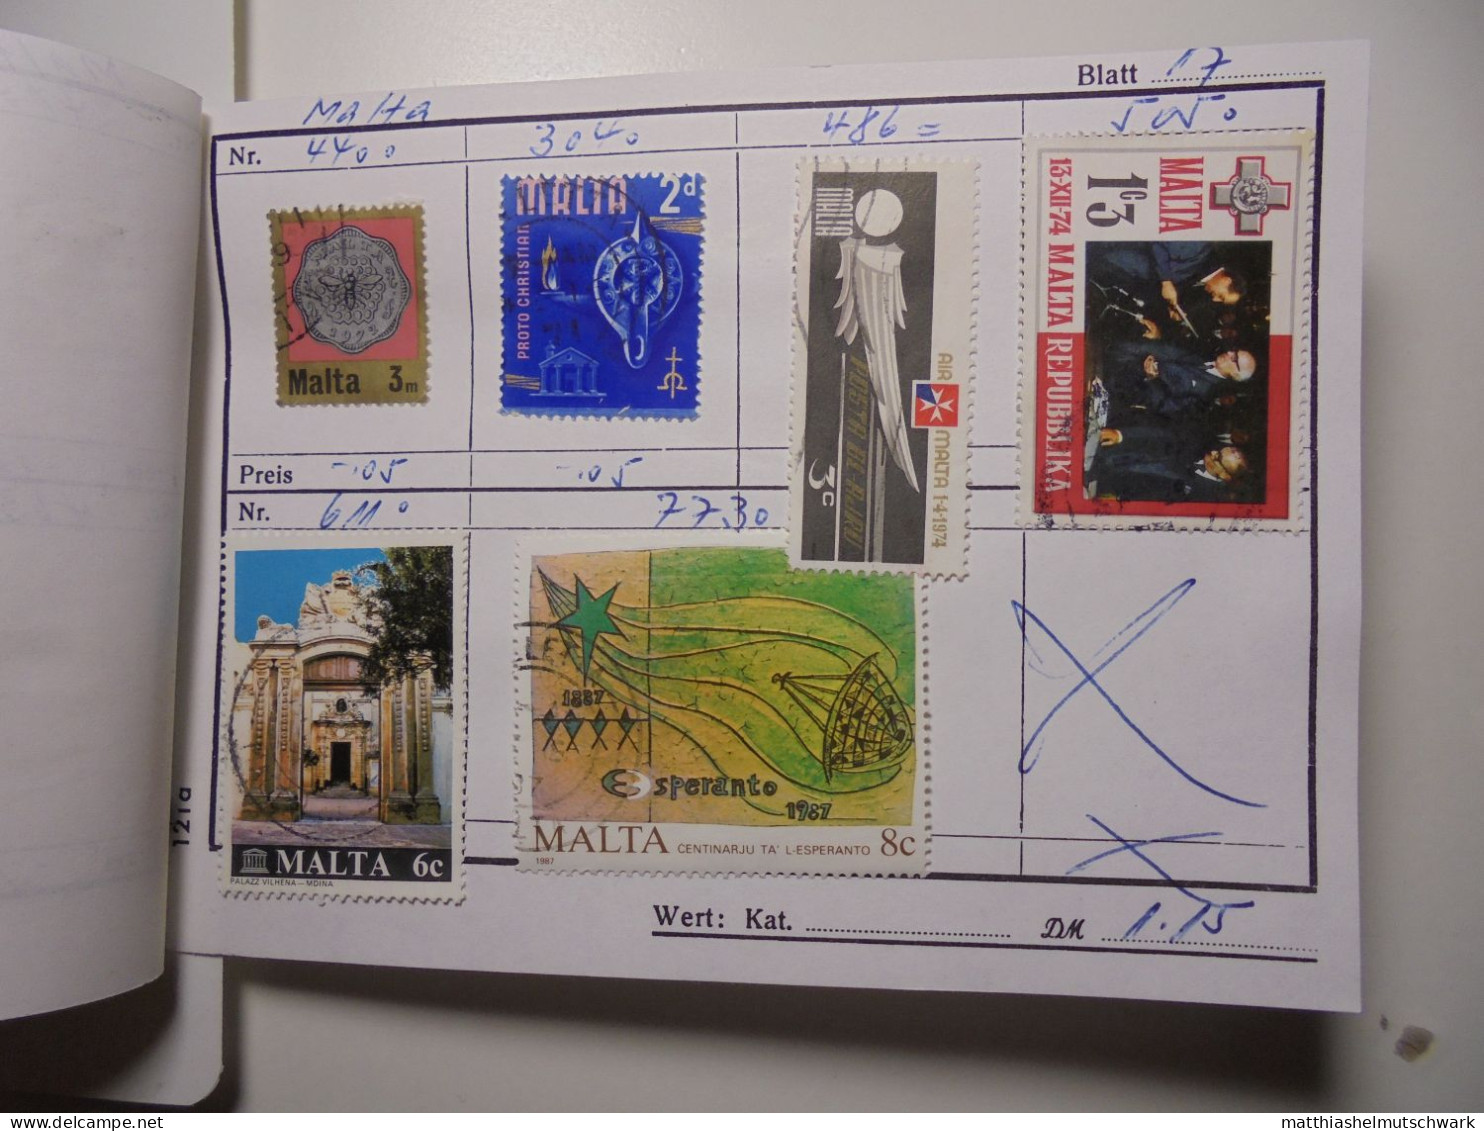 Auswahlheft Nr. 960 3 Blätter 22 Briefmarken  Malta 1901-1987/Mi Nr. 176-773, Unvollständig € 7,50 Stam - Malta